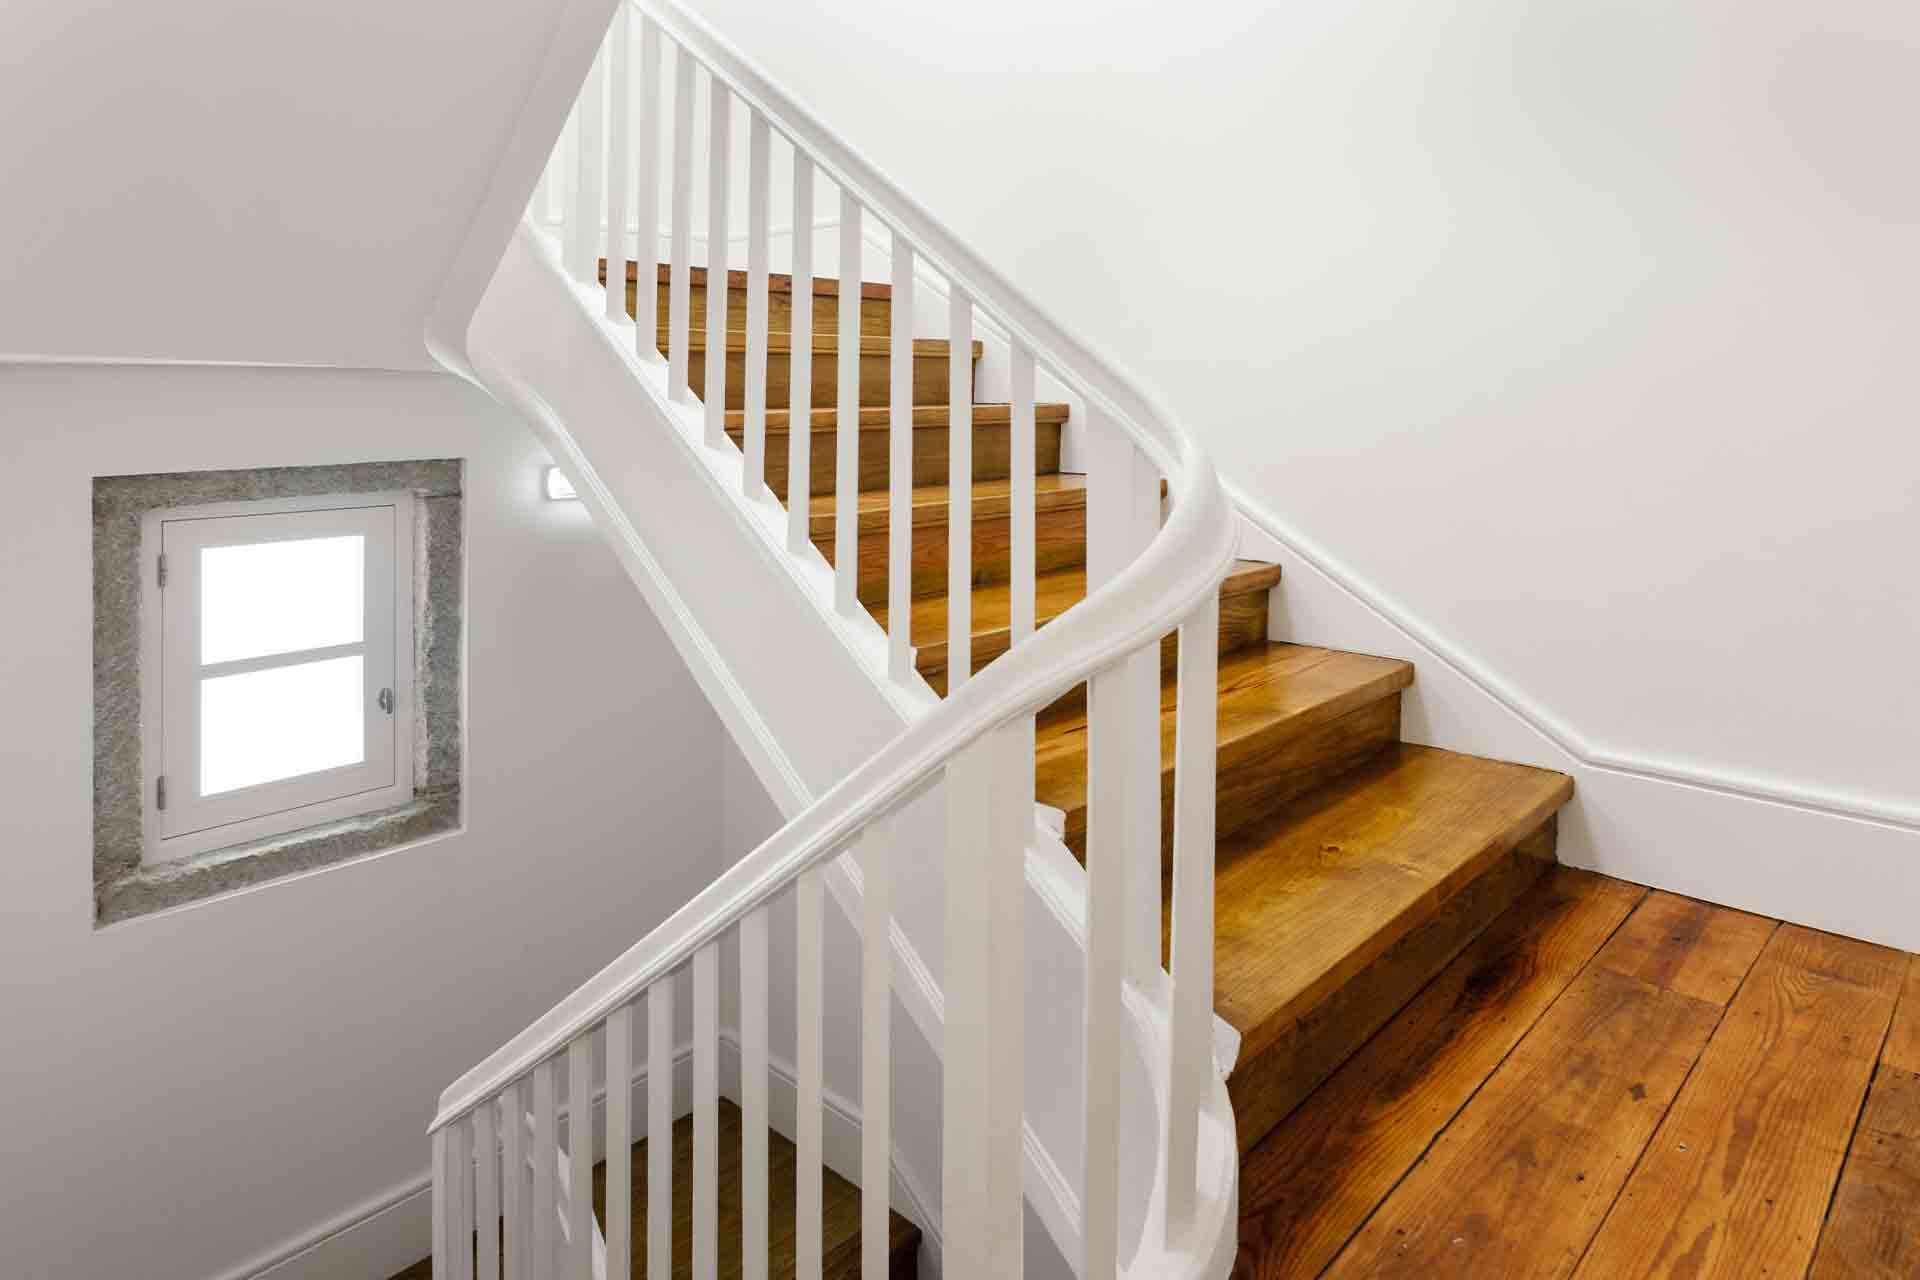 Lam cầu thang màu trắng với thiết kế đơn giản, dễ kết hợp với nhiều phong cách